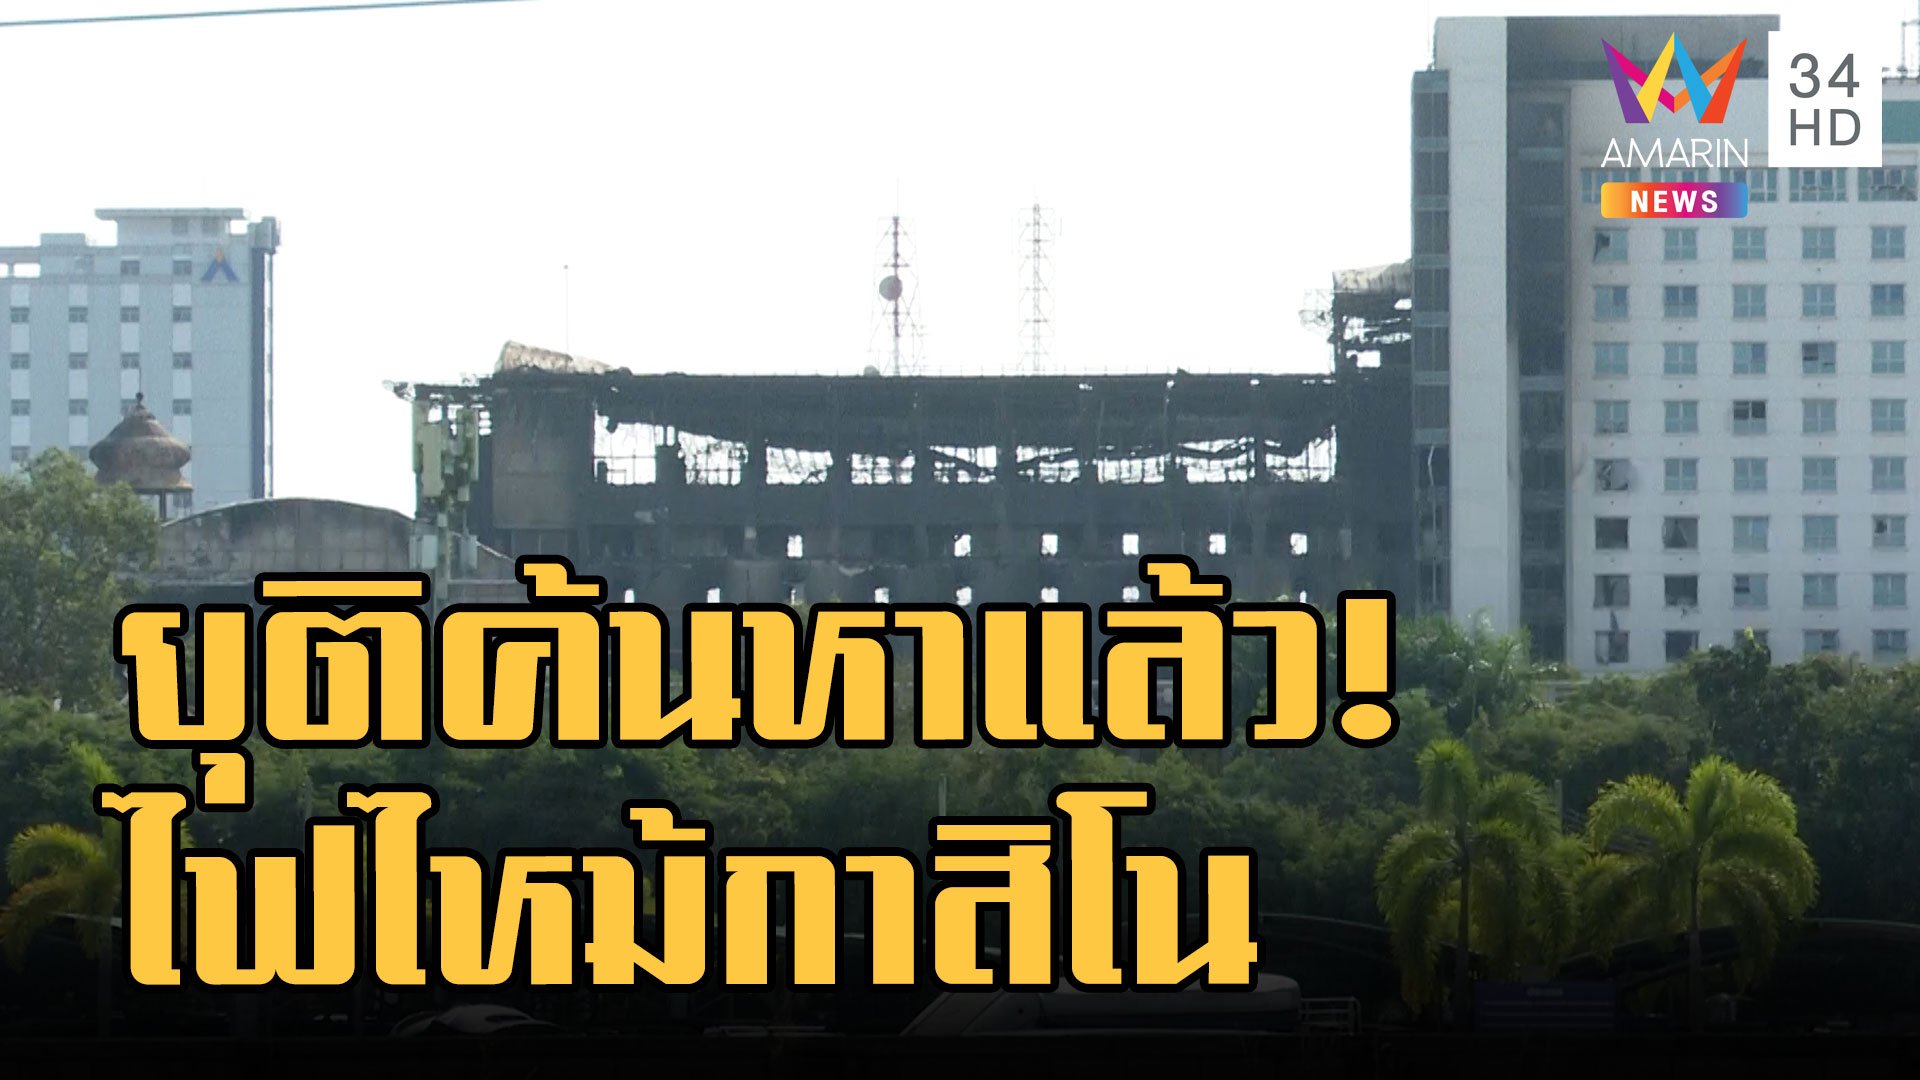 ยุติค้นหา! ไฟไหม้กาสิโน ไม่พบศพเพิ่ม รวมคนไทยดับ 20 ราย | ข่าวอรุณอมรินทร์ | 1 ม.ค. 66 | AMARIN TVHD34